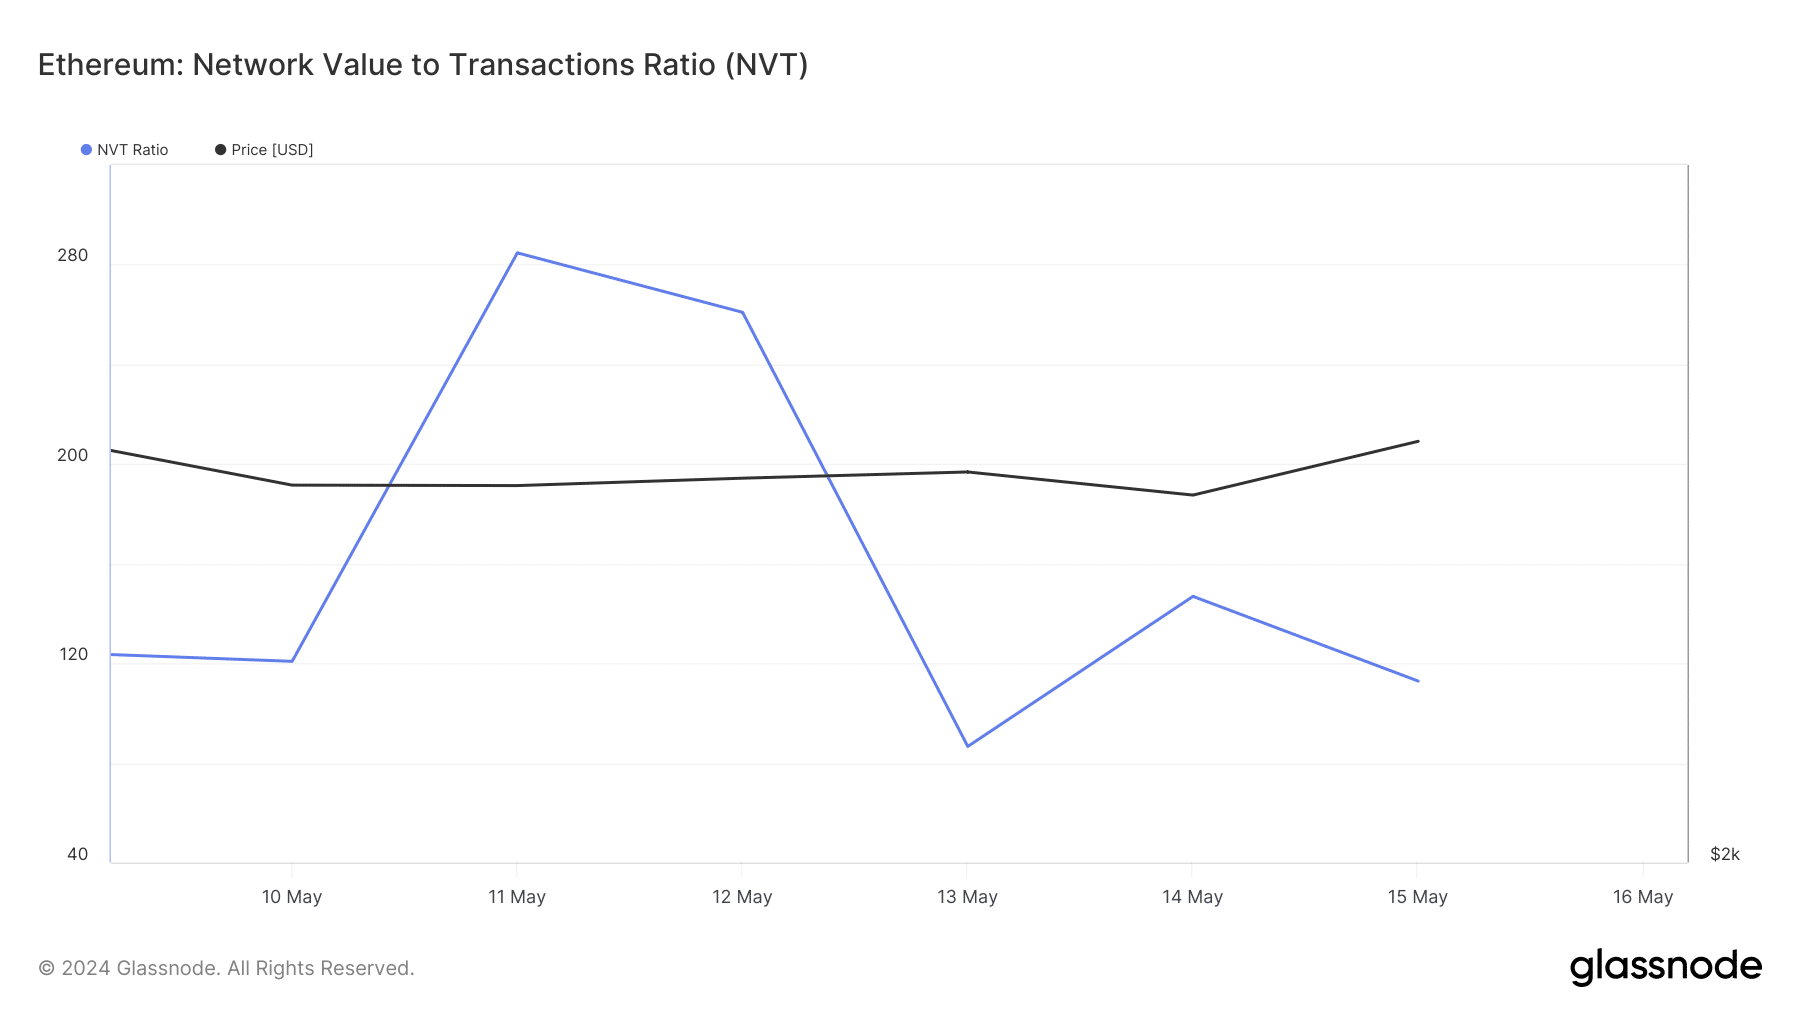 El ratio NVT de ETH cayó